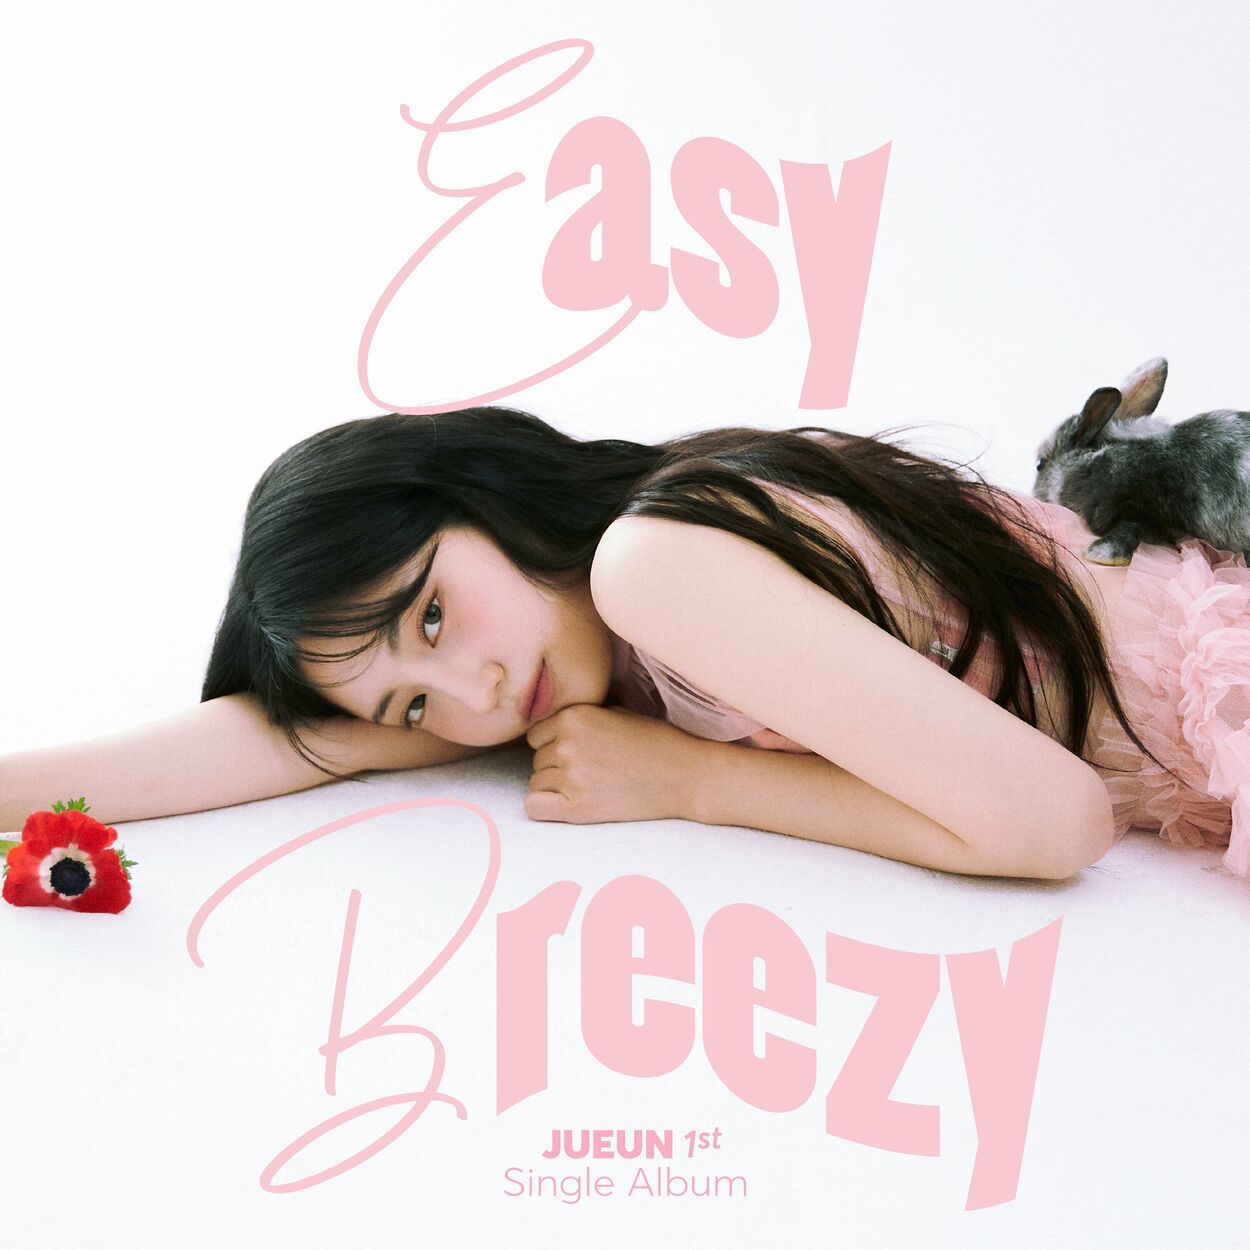 JUEUN – Easy Breezy – Single